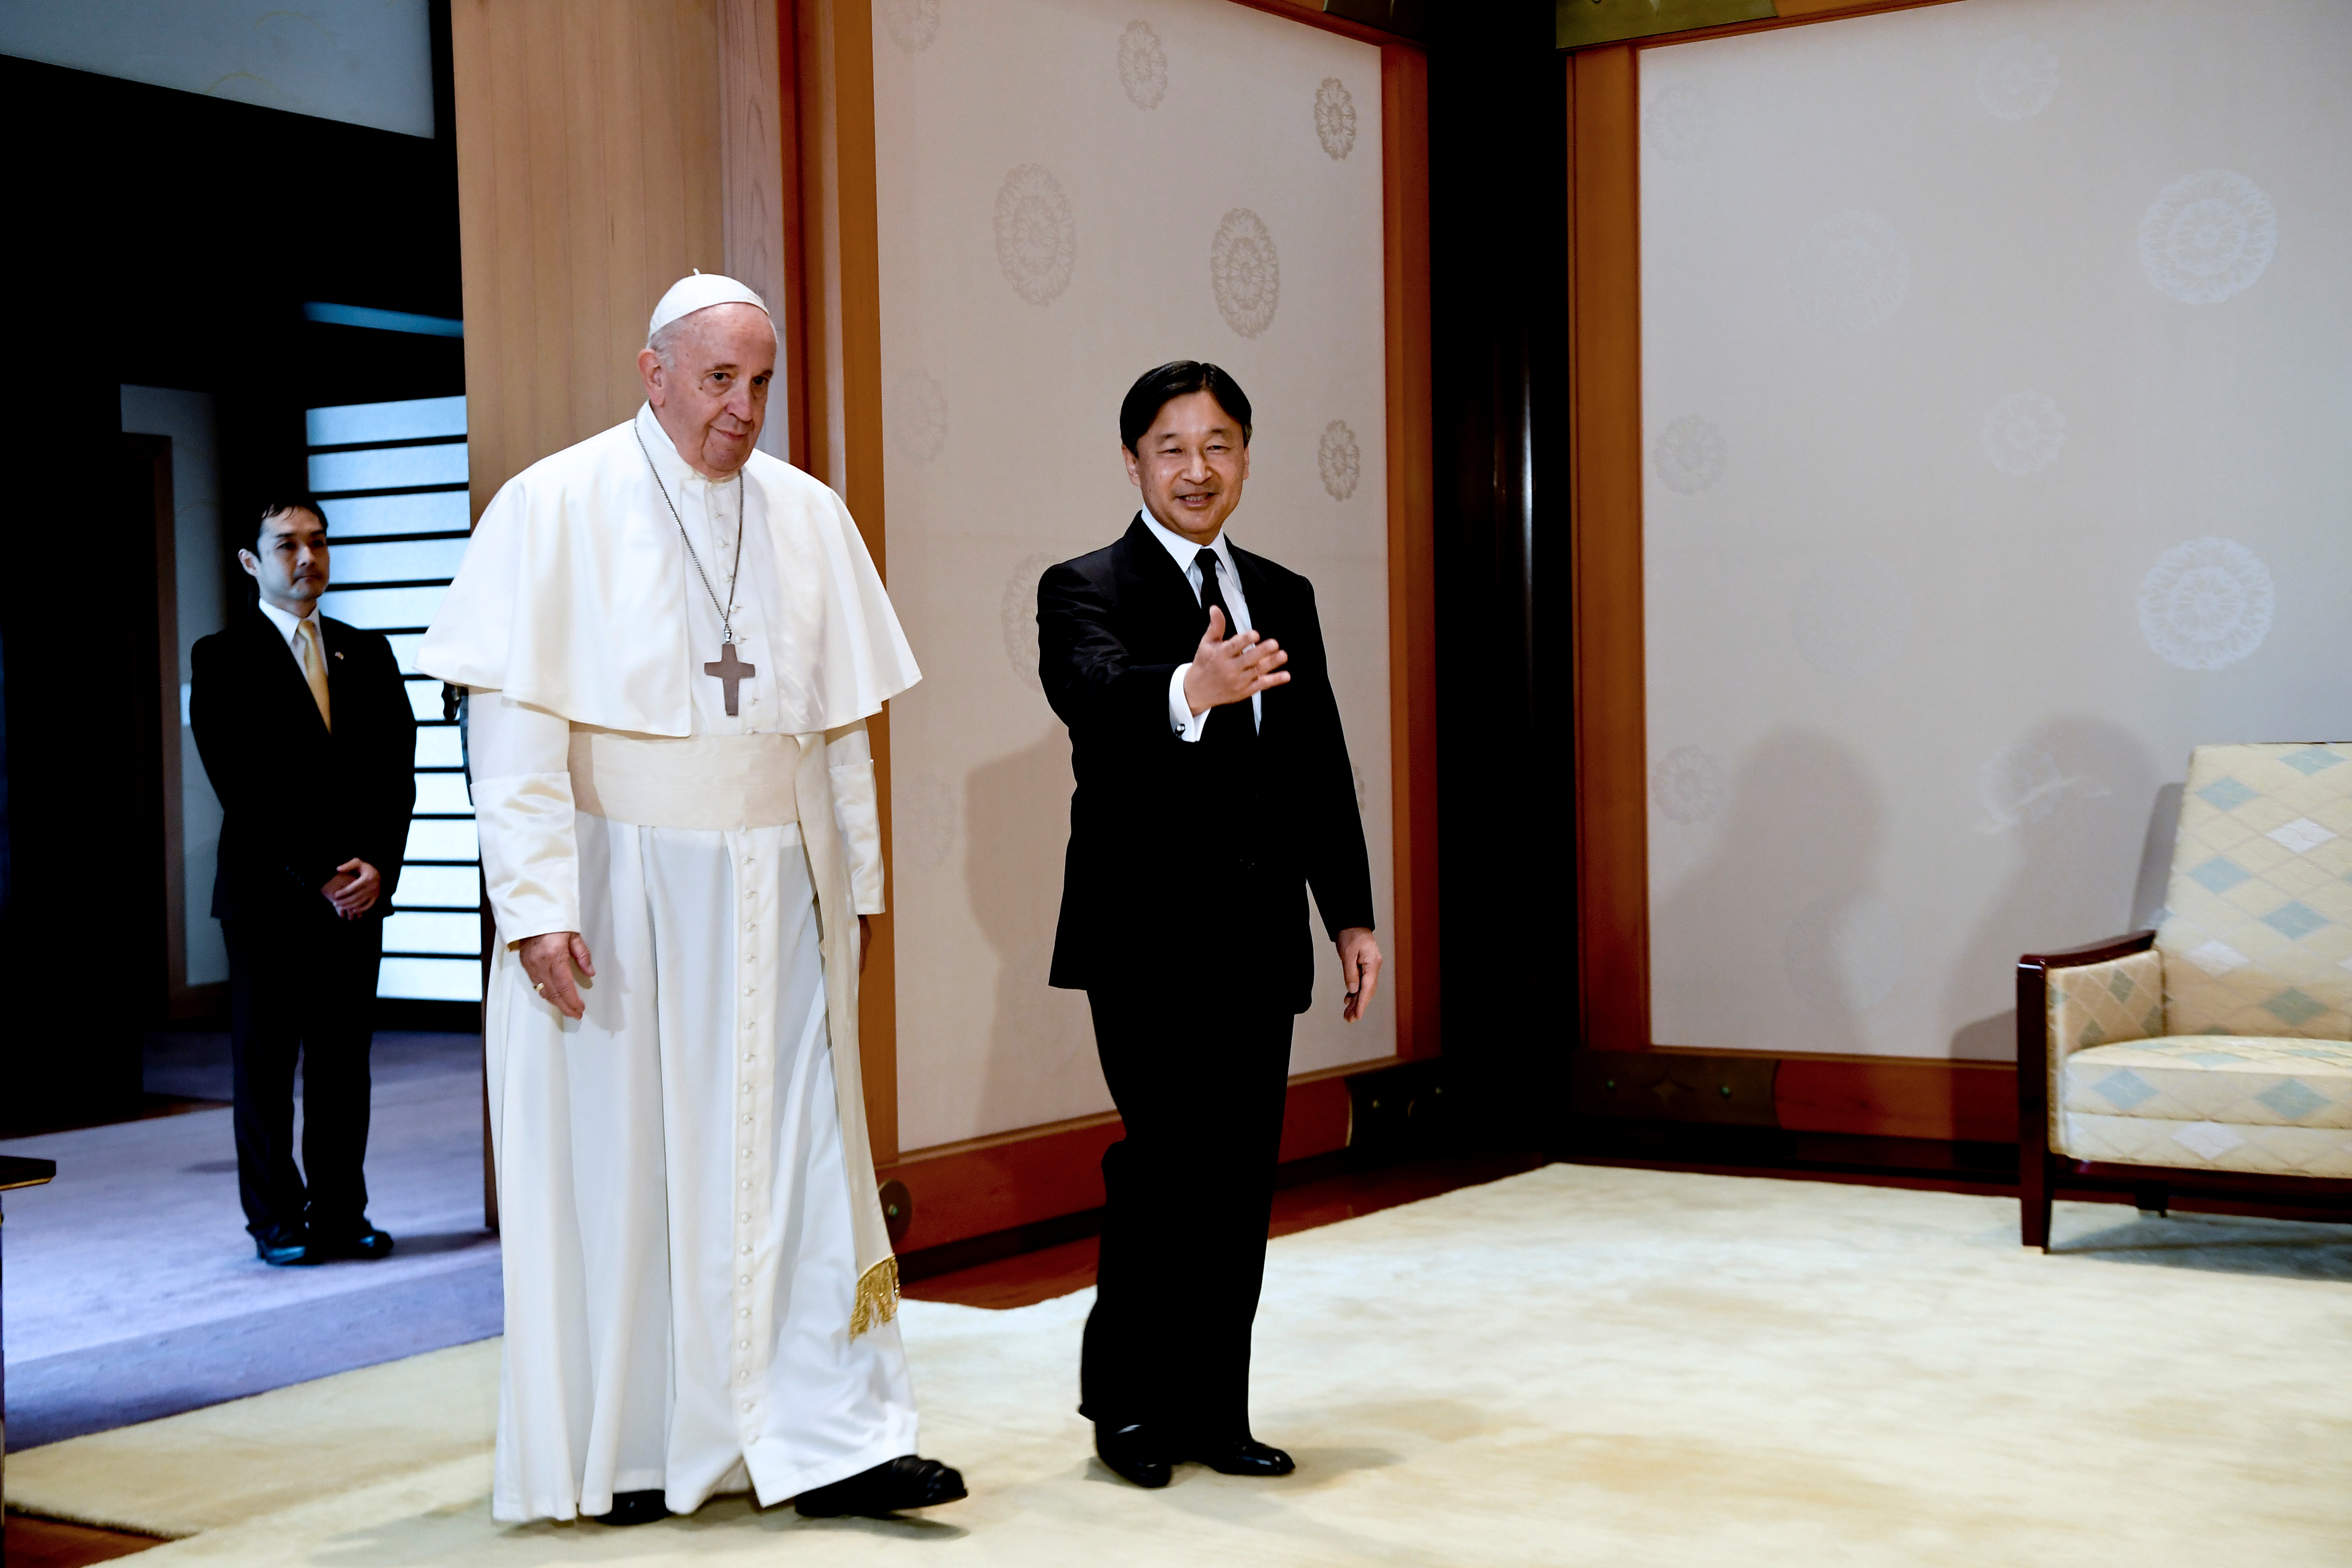 El Papa confesó al emperador Naruhito que sus padres lloraron por Hiroshima